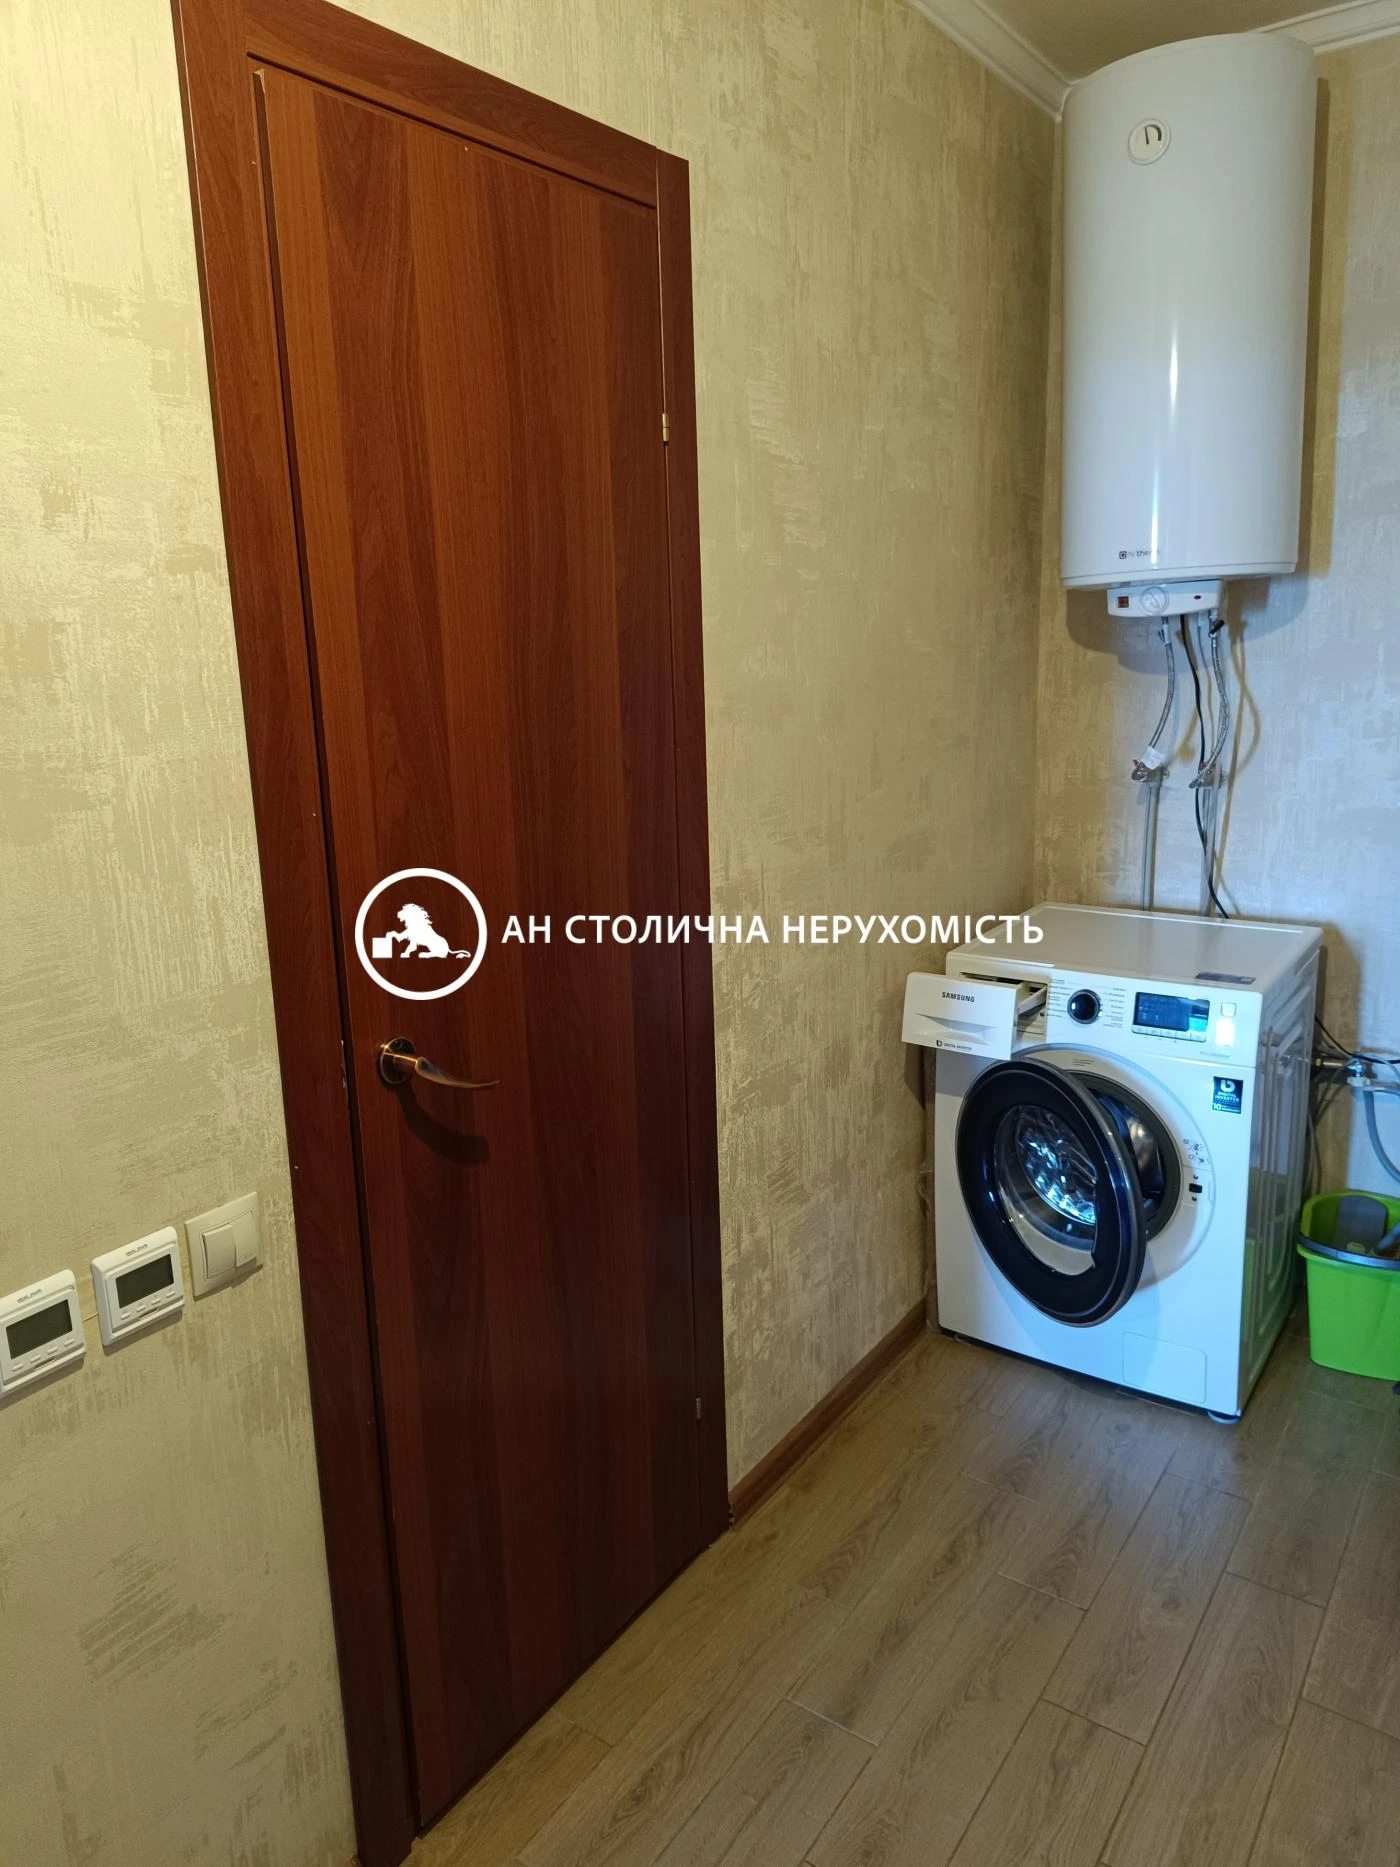 Apartments for sale. 2 rooms, 76 m², 24 floor/25 floors. 5, Baltiyskiy 5, Kyiv. 